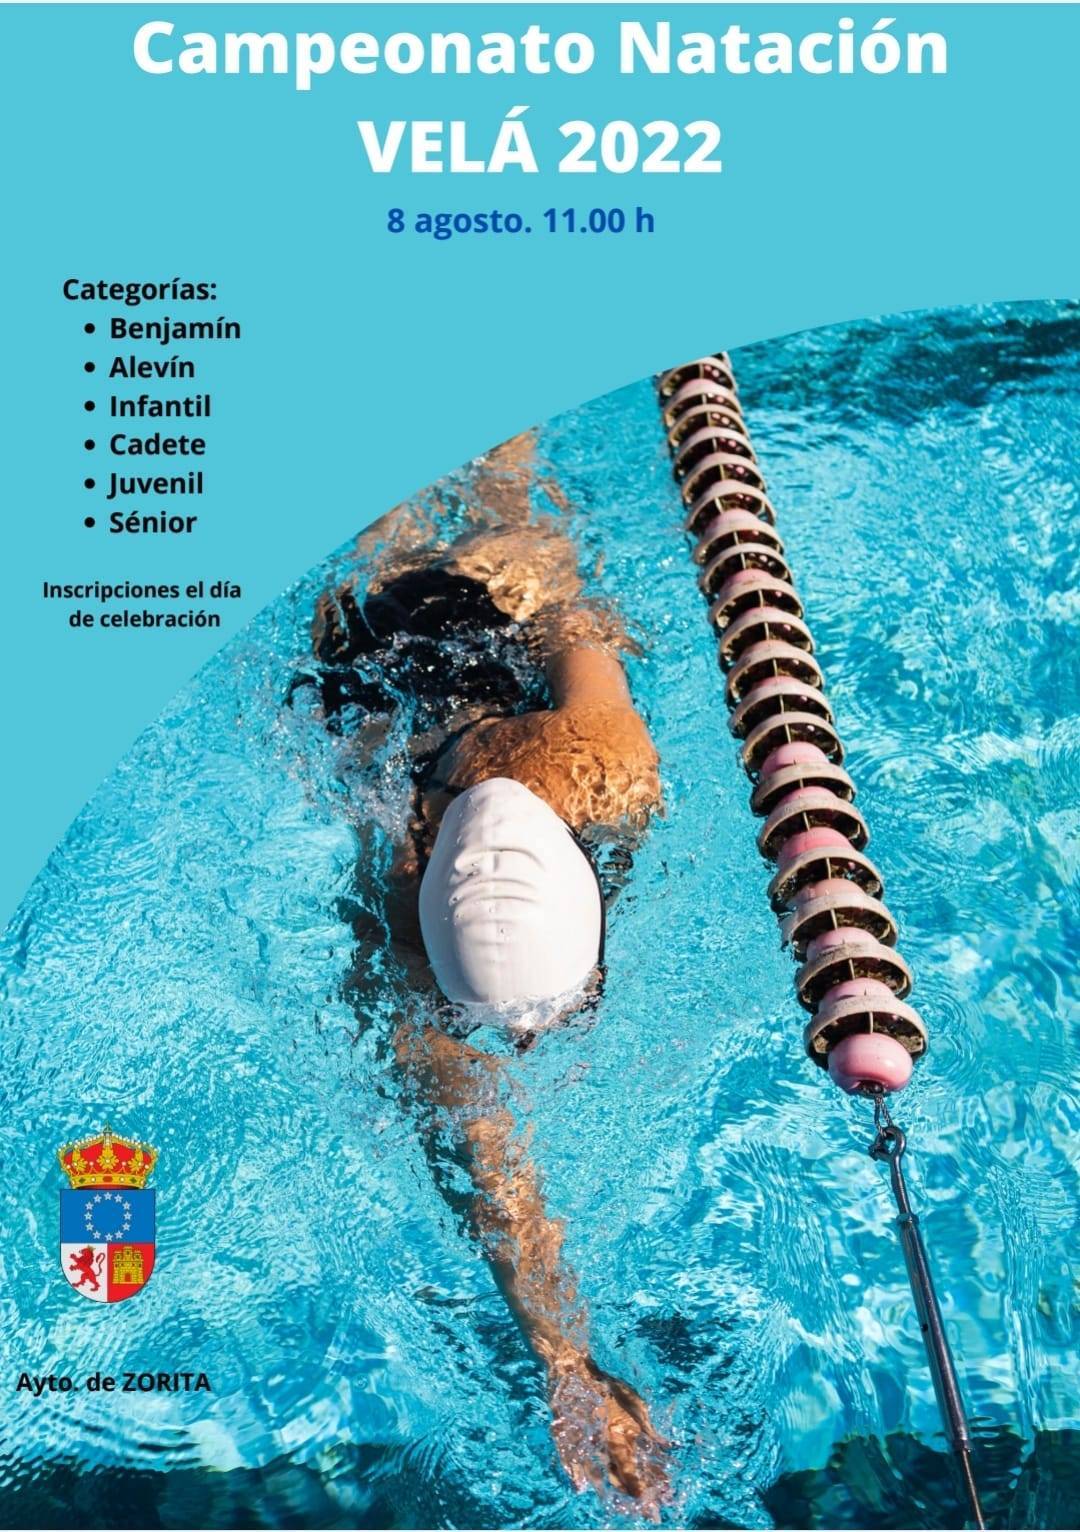 Campeonato de natación Velá (2022) - Zorita (Cáceres)